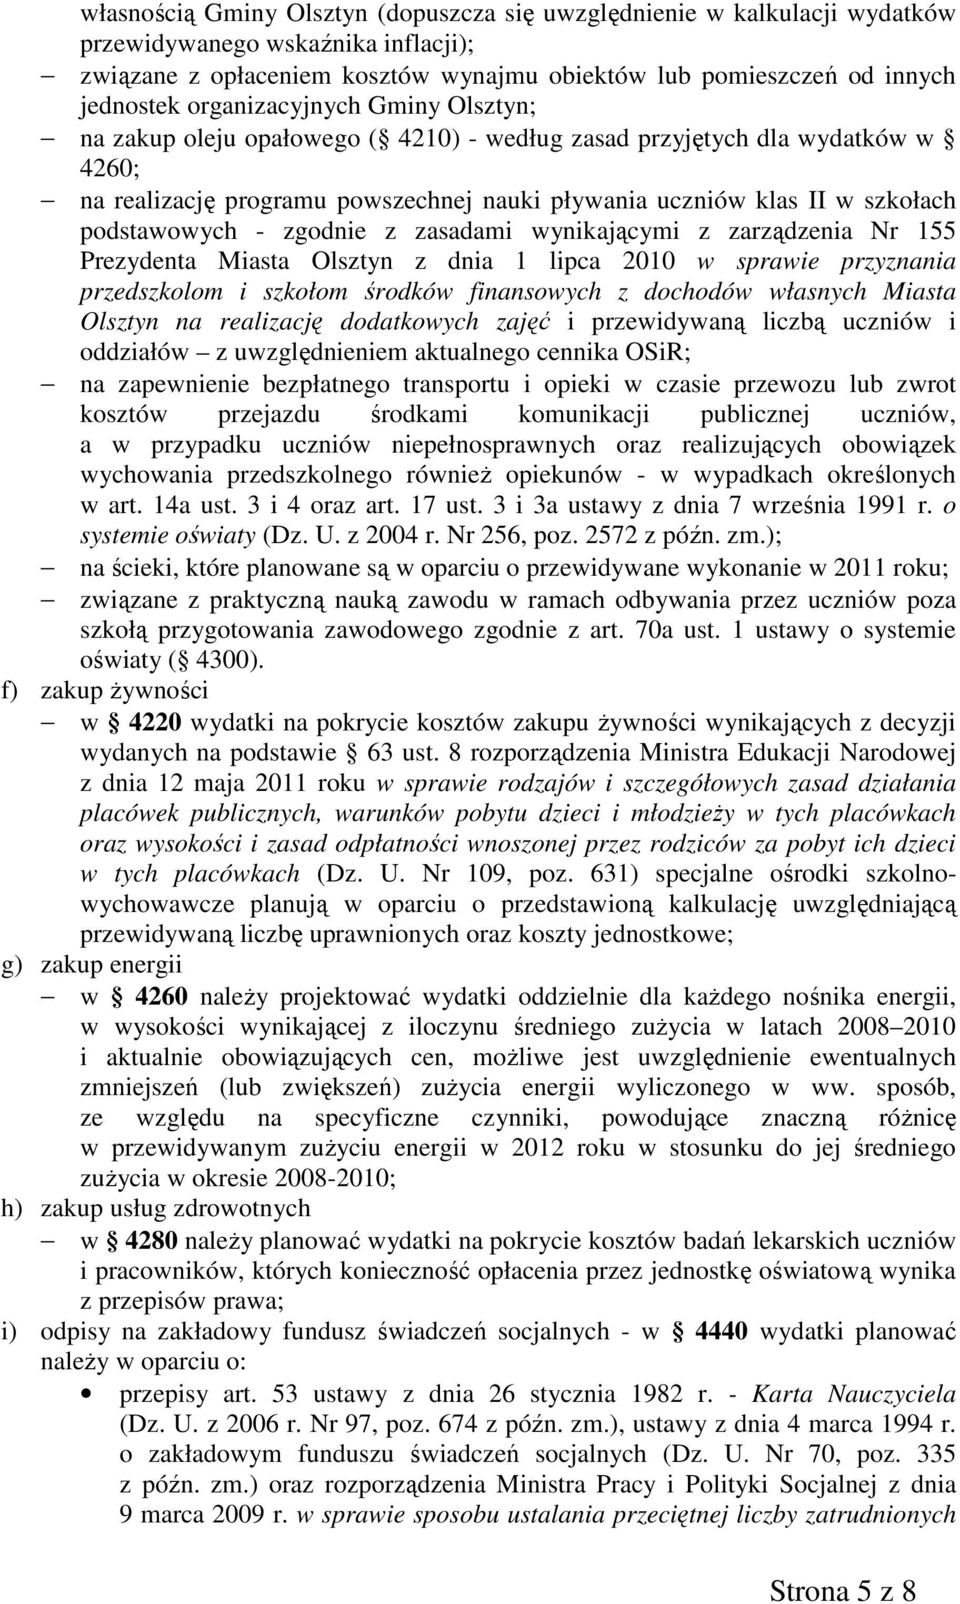 podstawowych - zgodnie z zasadami wynikającymi z zarządzenia Nr 155 Prezydenta Miasta Olsztyn z dnia 1 lipca 2010 w sprawie przyznania przedszkolom i szkołom środków finansowych z dochodów własnych